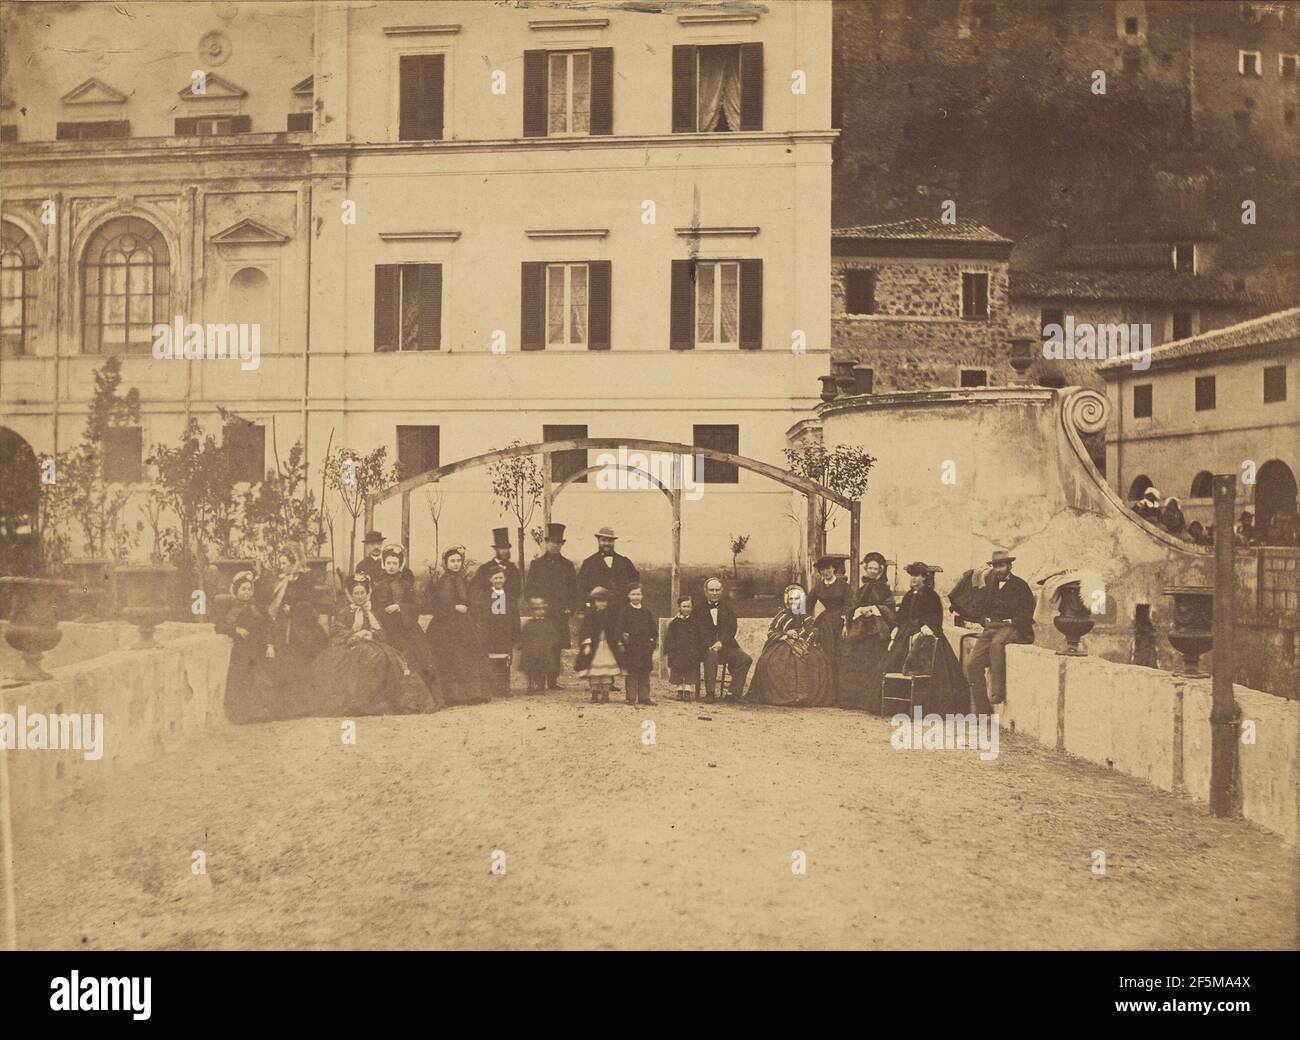 Ceccano. Altobelli & Molins (Italian, active until 1865) Stock Photo